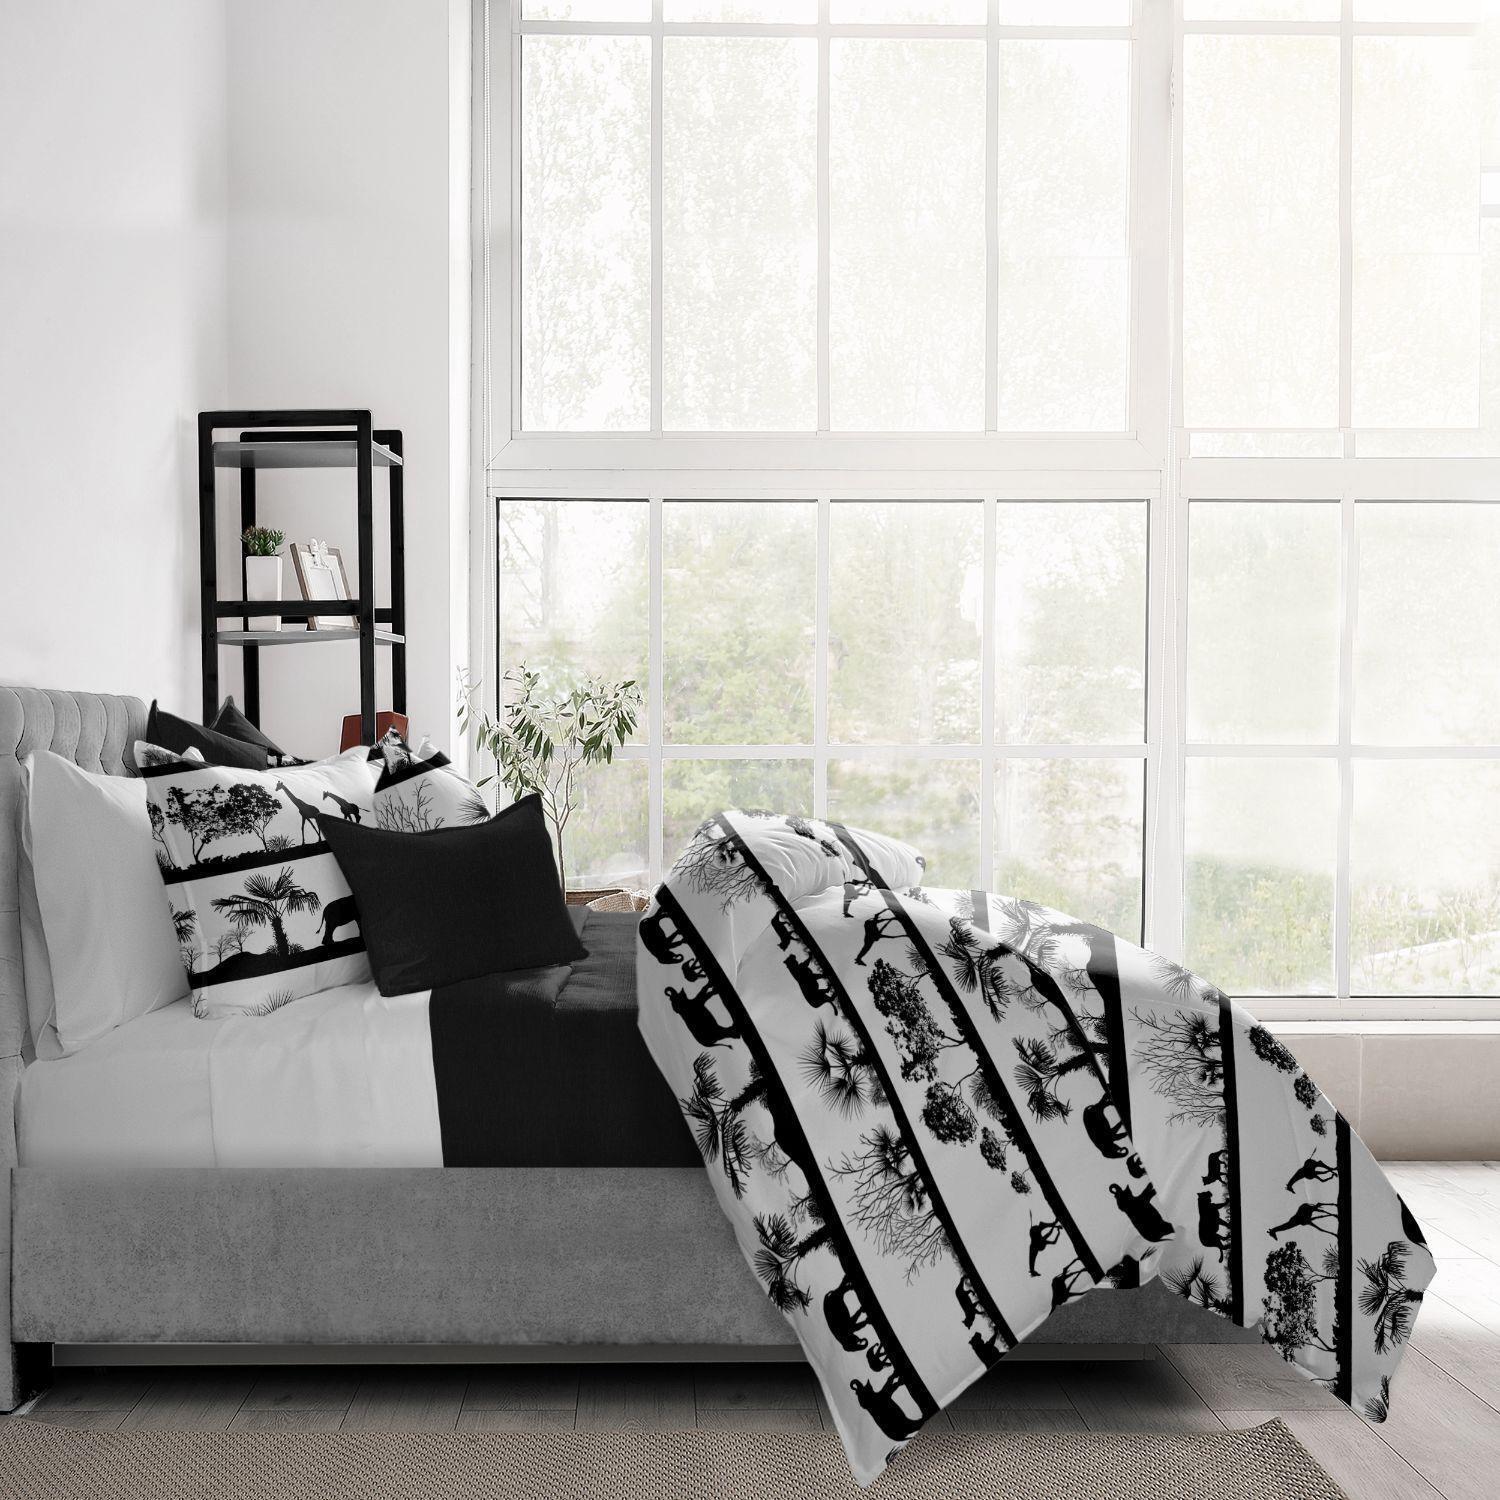 Set of 3 White and Black Sahara Desert Comforter with Pillow Shams - Full alternate image